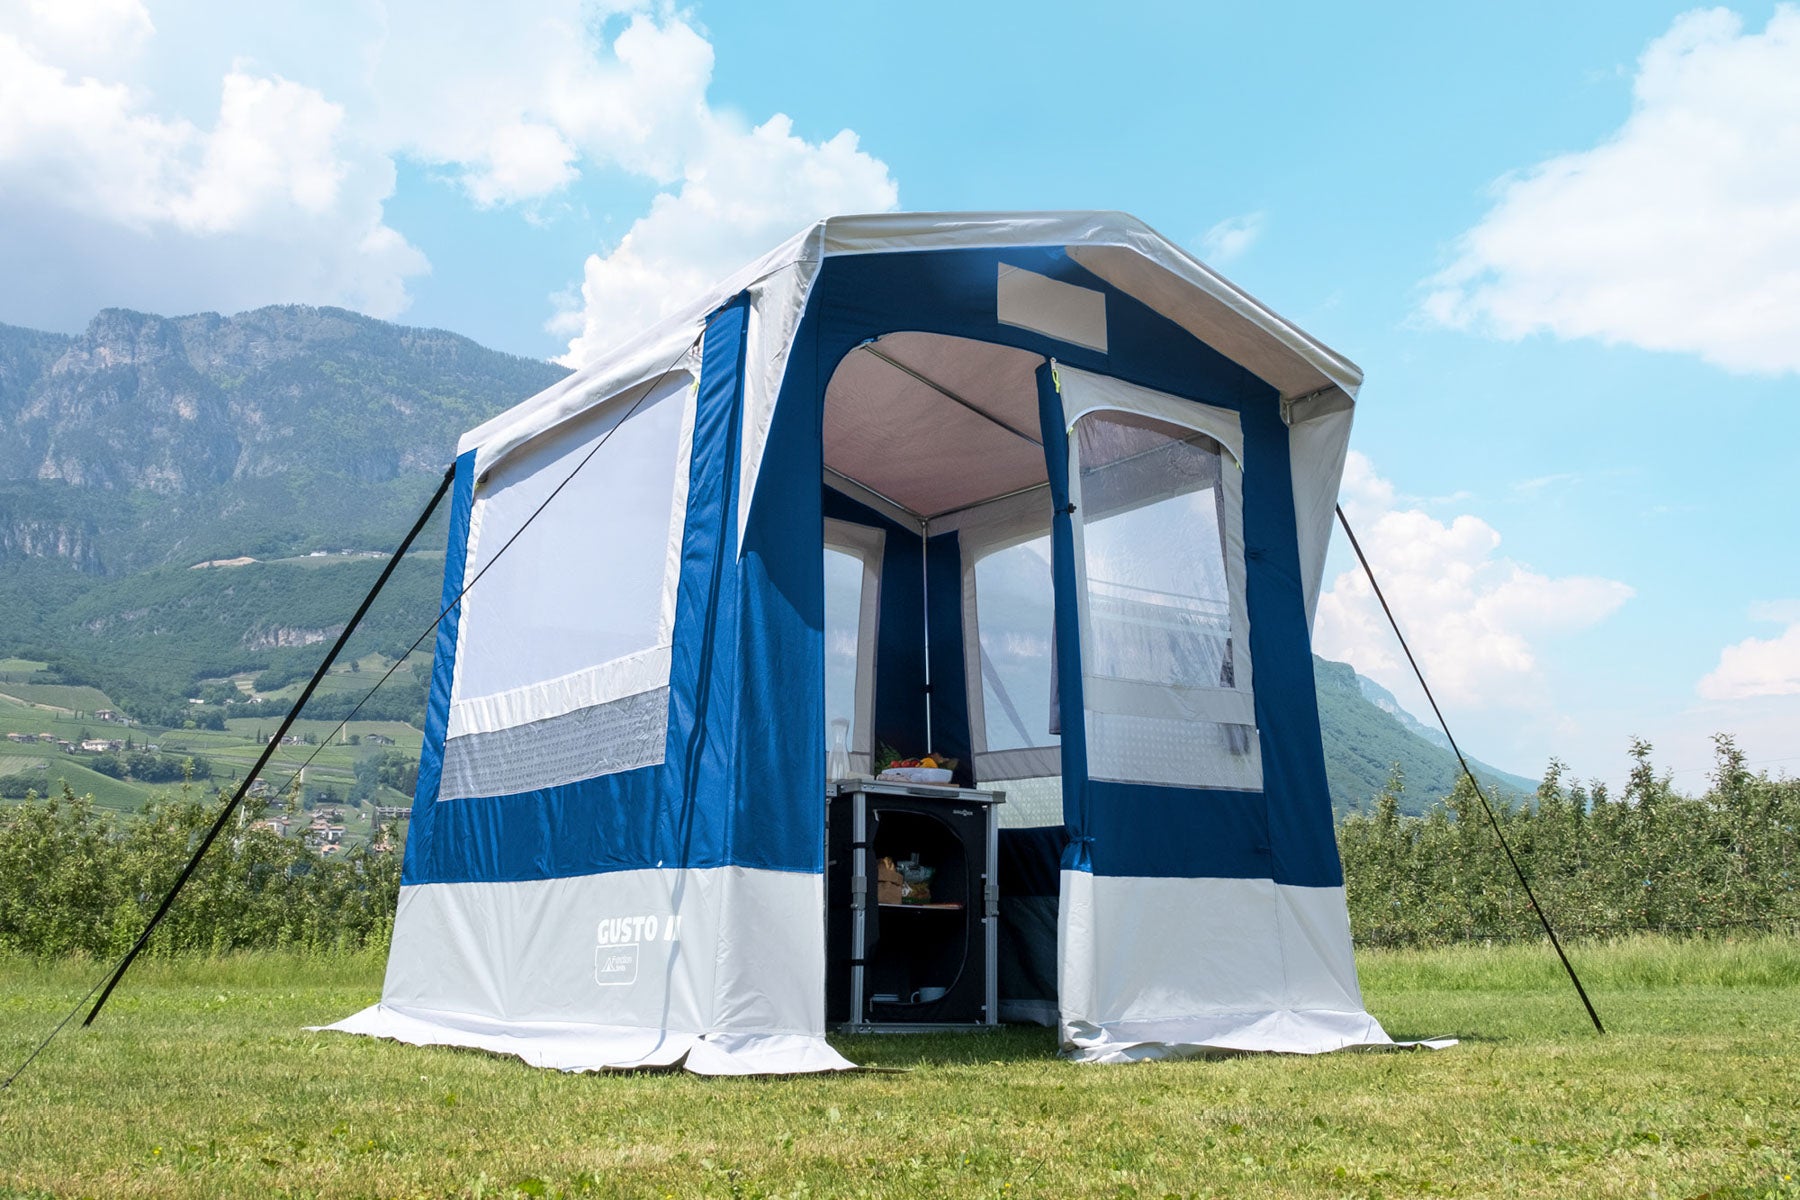 Палатка за кухня, склад или килер, допълнително помещение към караваната и форцелта. Просторни прозрци, здрава конструкция със стоманена рамка. Satelite tent for kitchen, storage to your caravan and campsite.